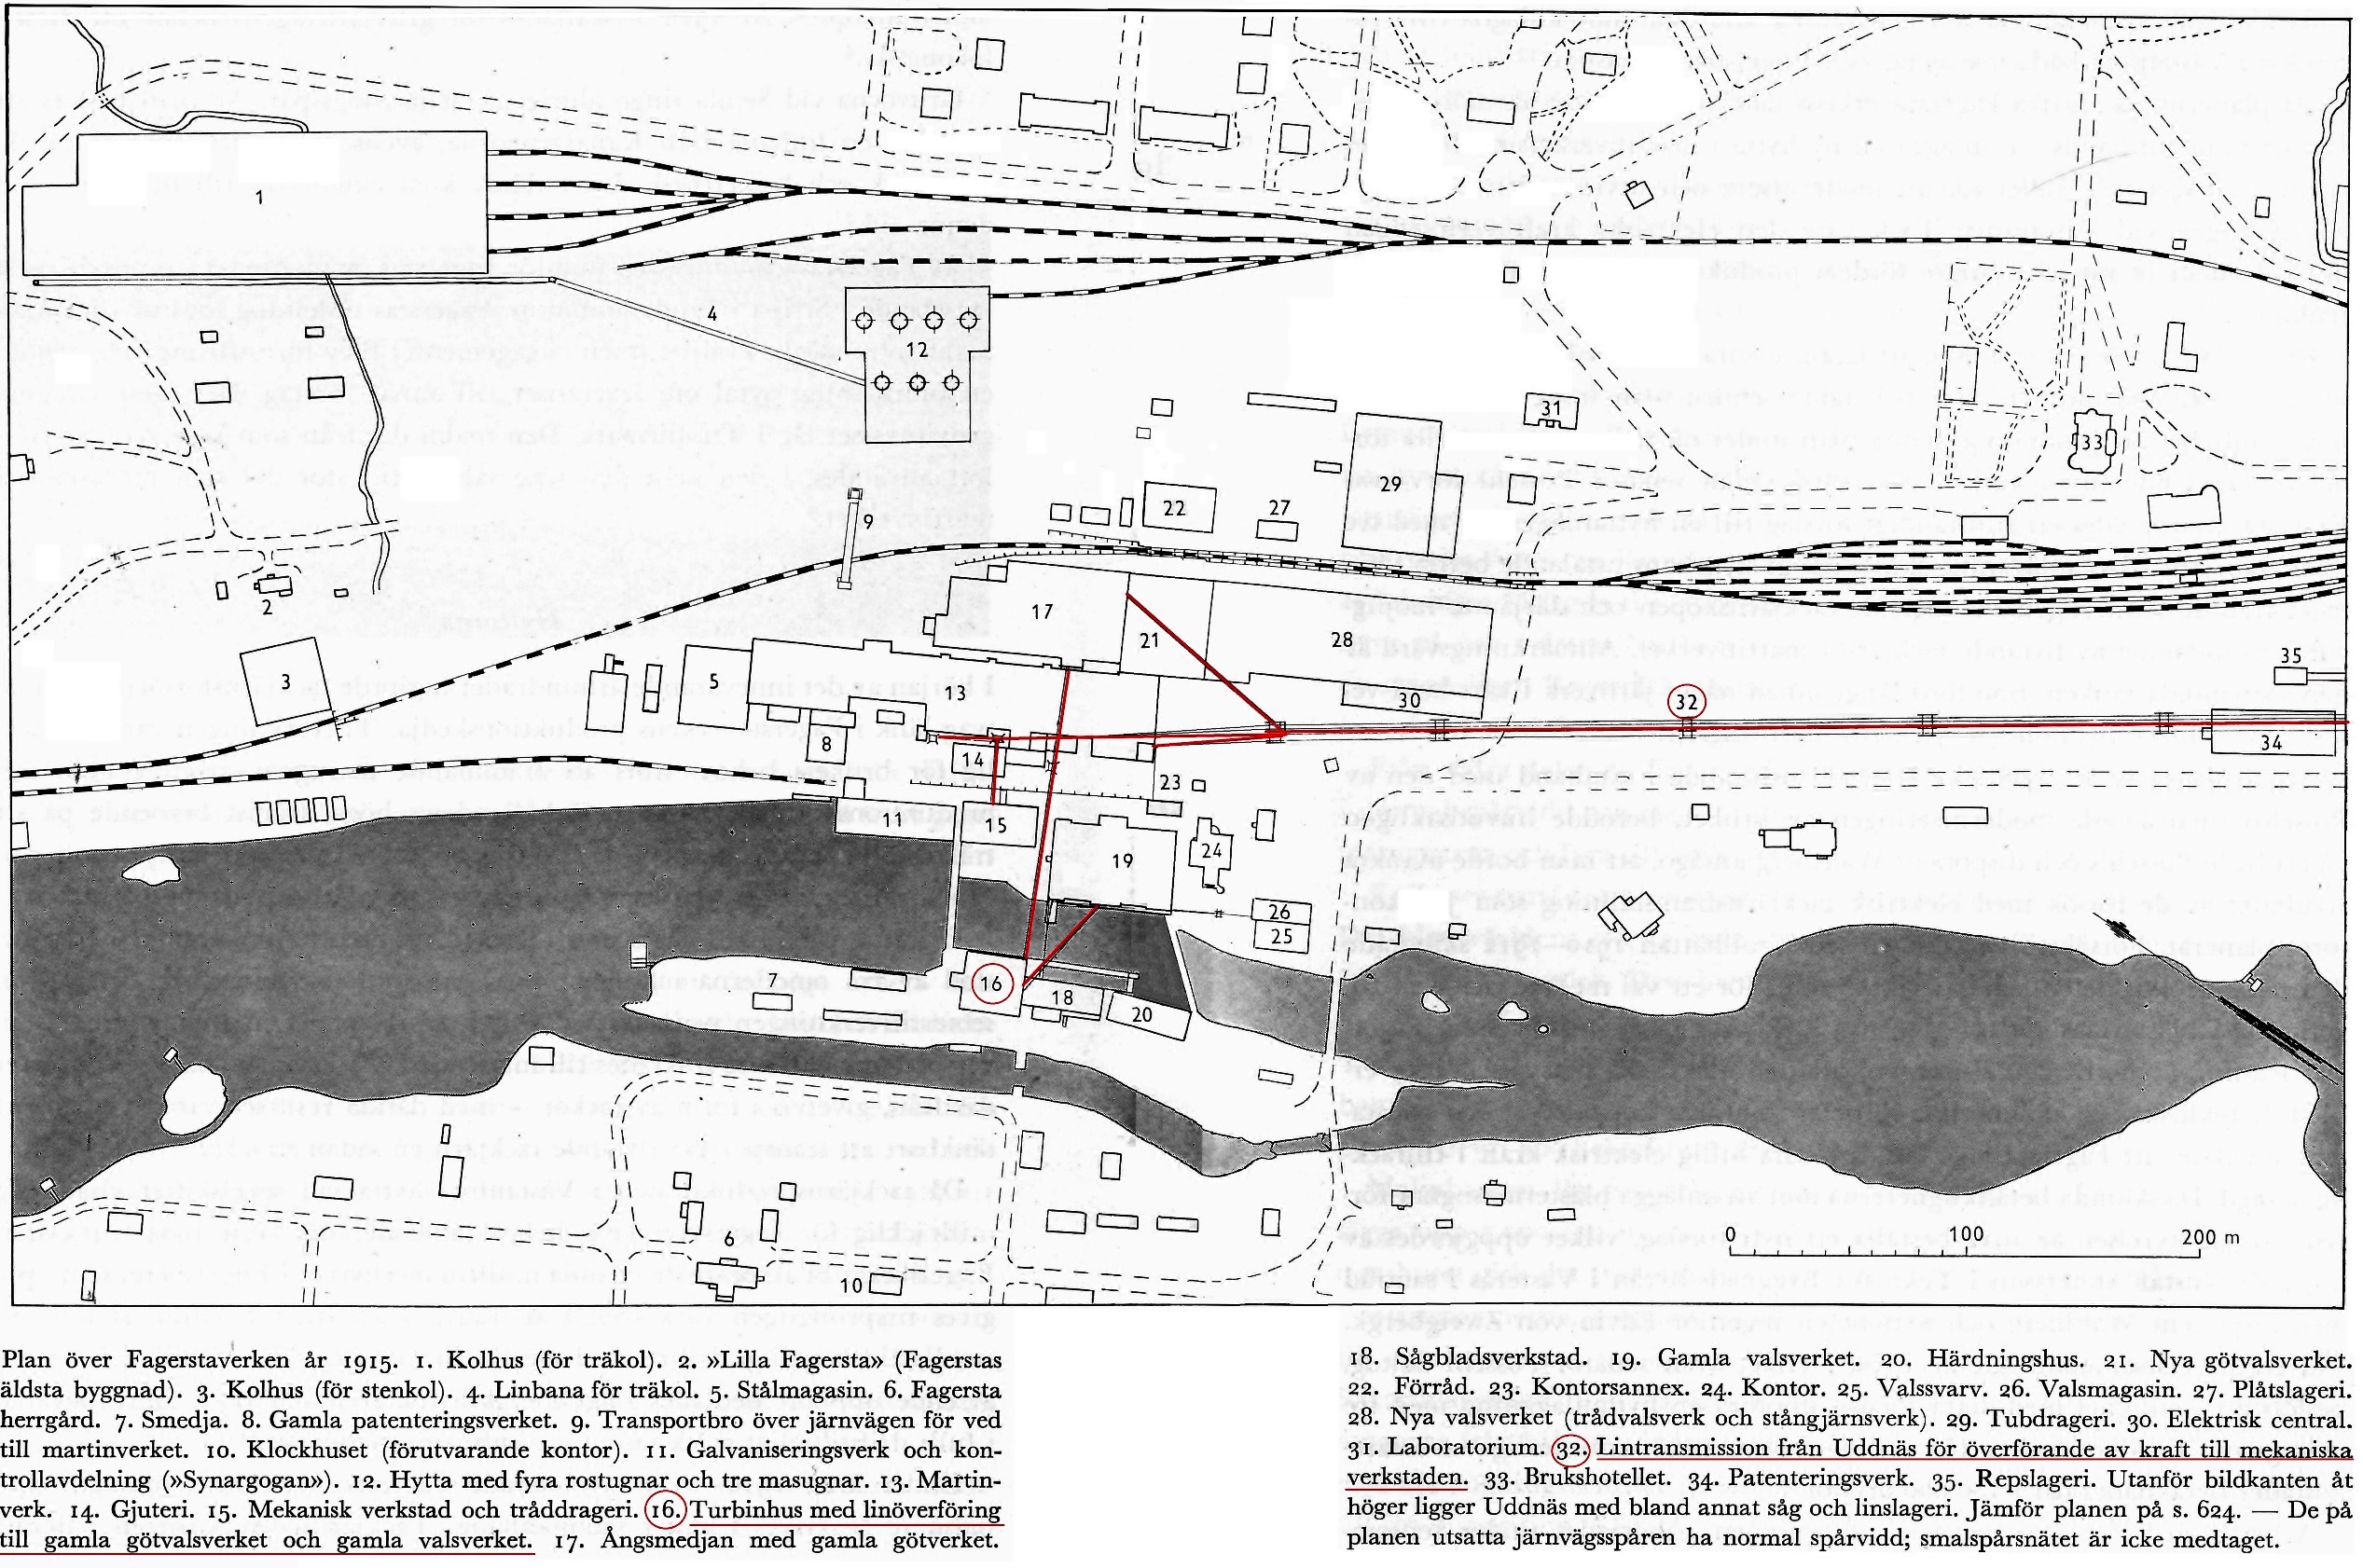 Plan över Fagersta verken 1915, lintransmissionen från Uddnäs och Holmen markerat med rött